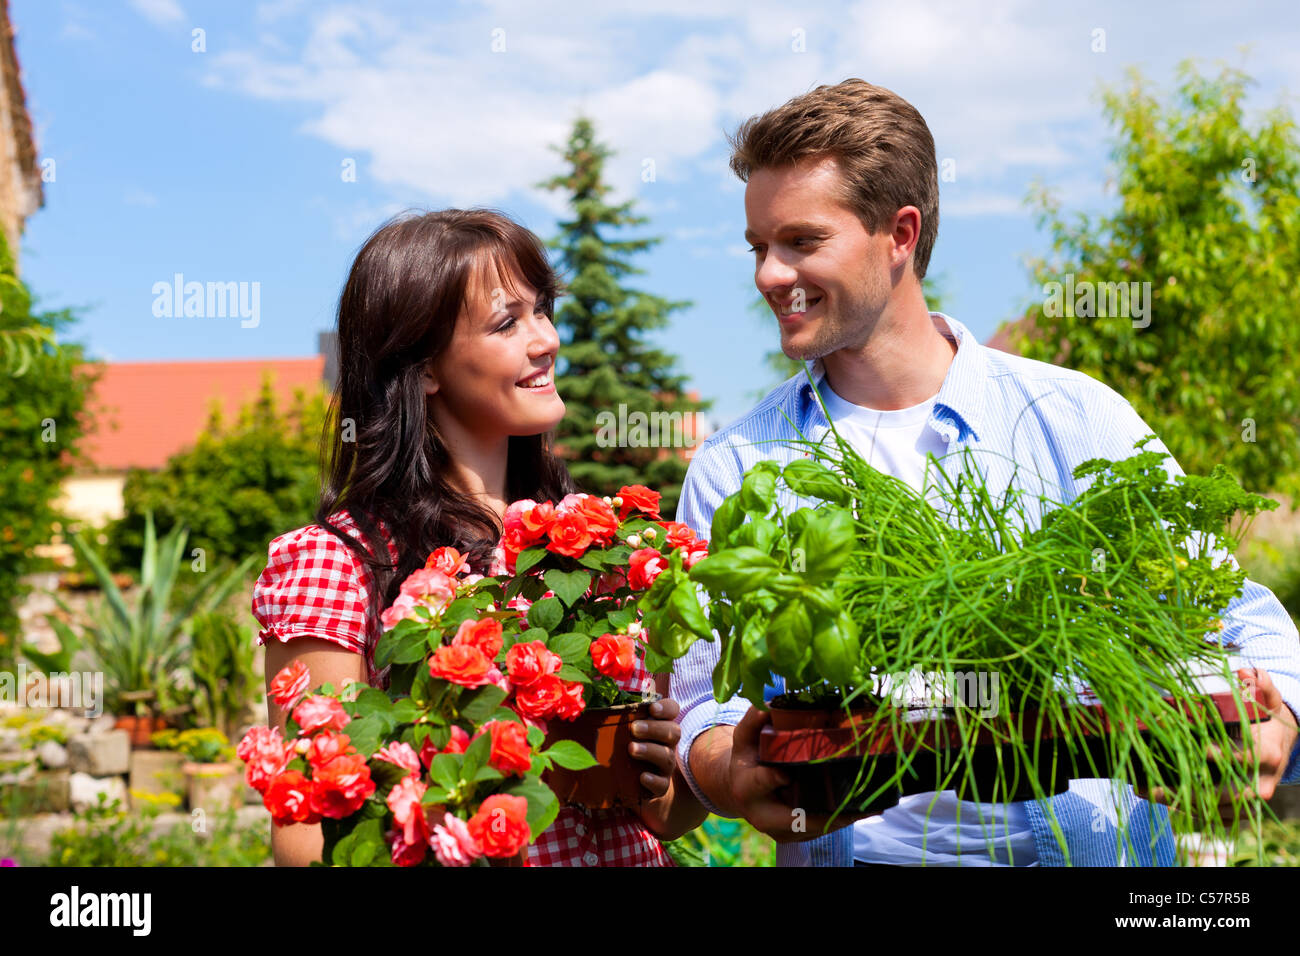 Gartenarbeit im Sommer - Brautpaar mit frischen Kräutern und roten Blüten Stockfoto